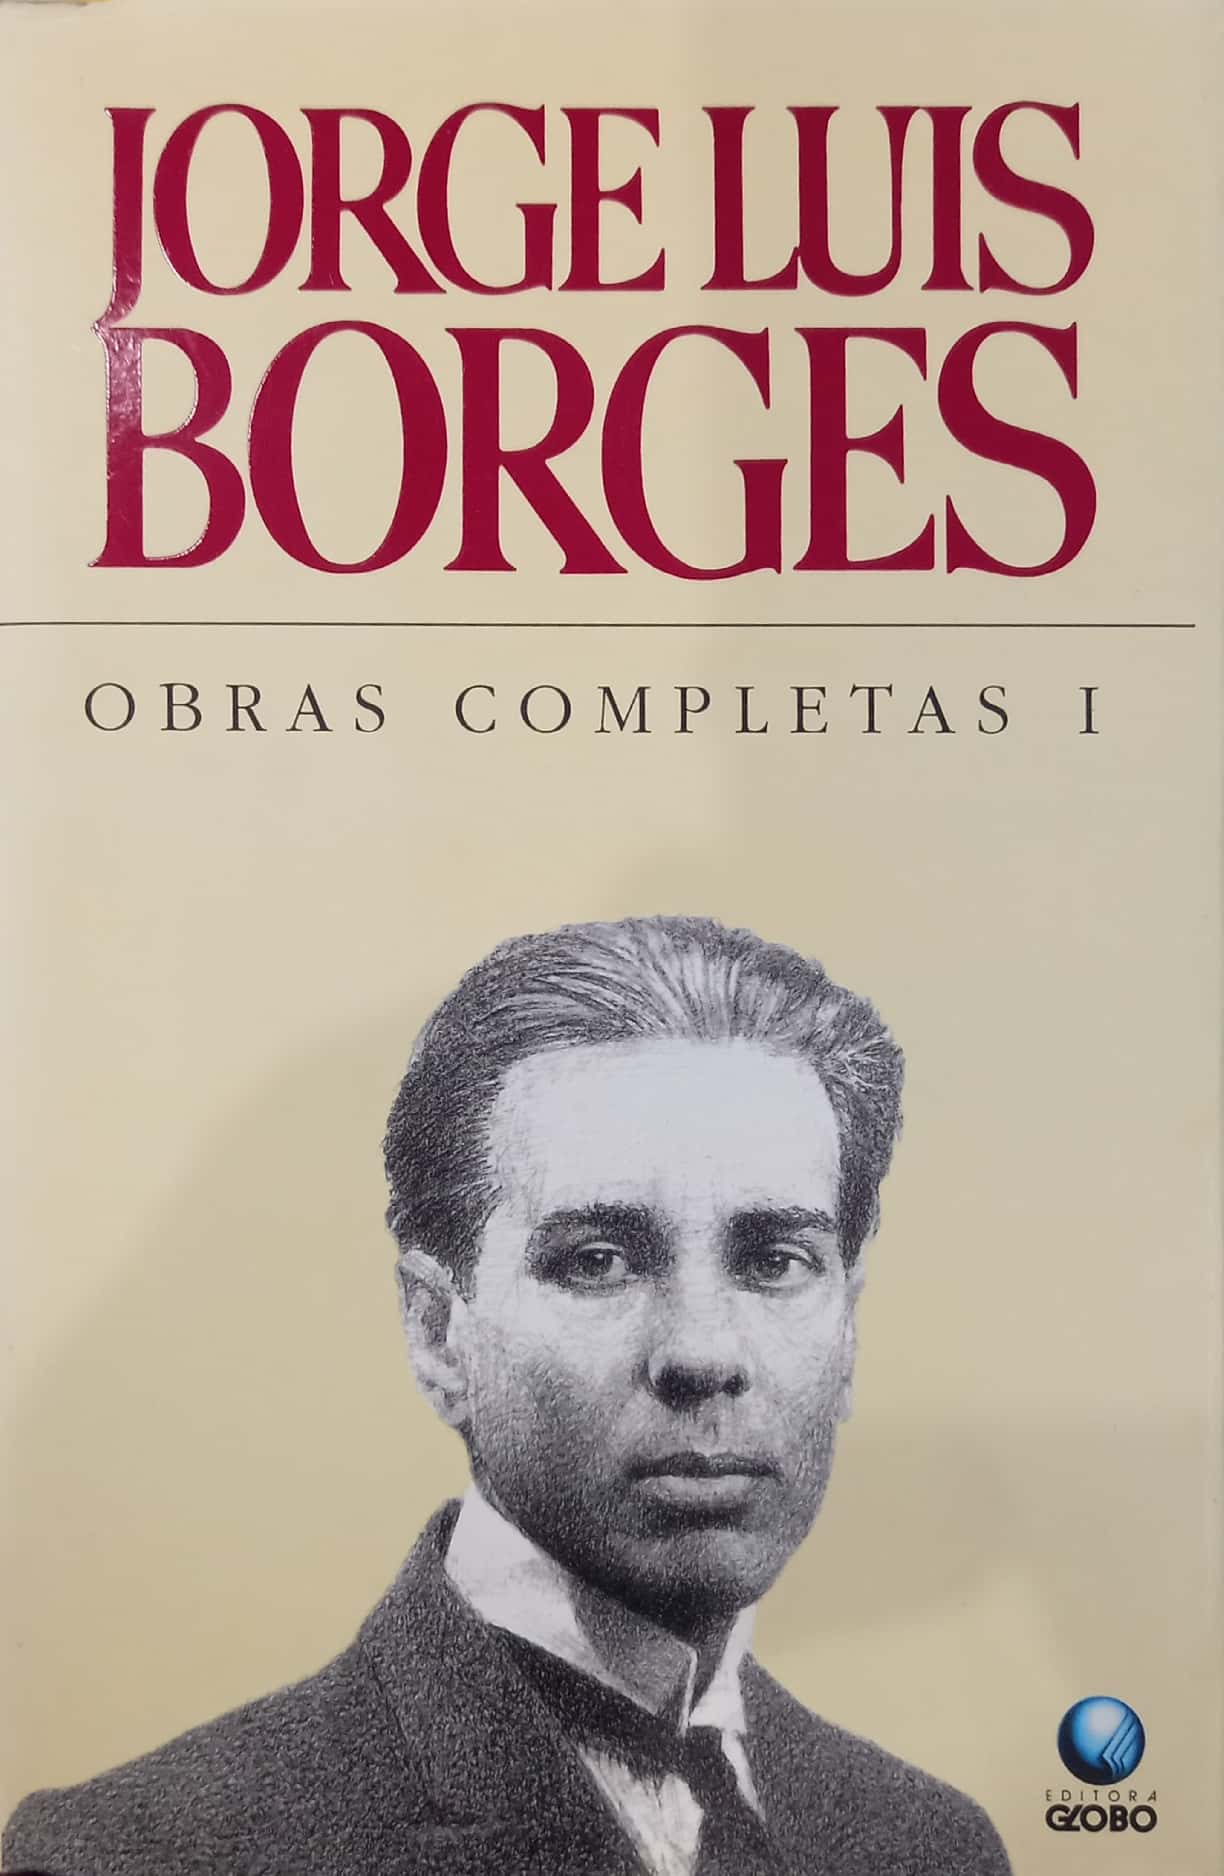 Jorge Luis Borges - Obras completas (4 volumes)